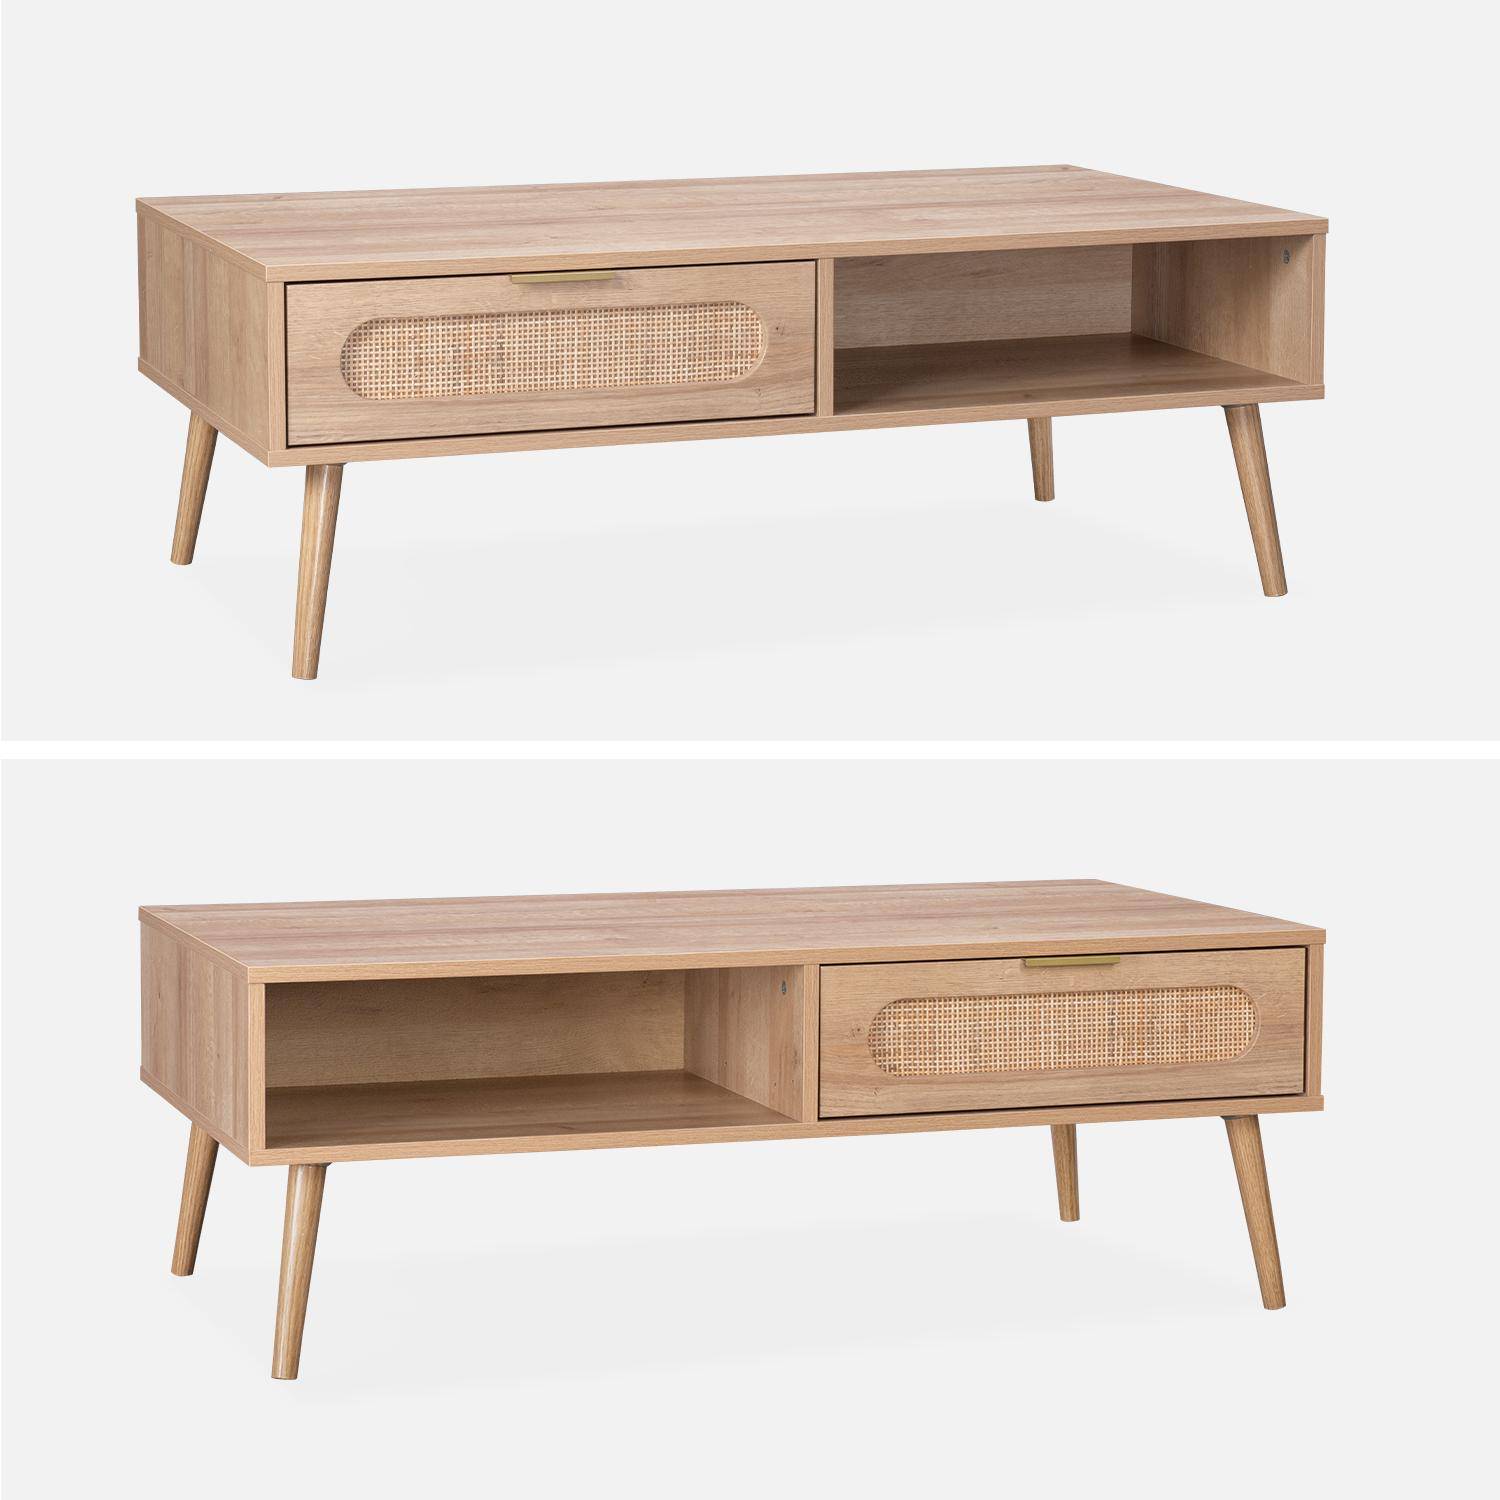 Table basse, Eva,  scandinave en cannage arrondi et en décor bois, 1 tiroir réversible L110 x l59 x H39cm Photo6